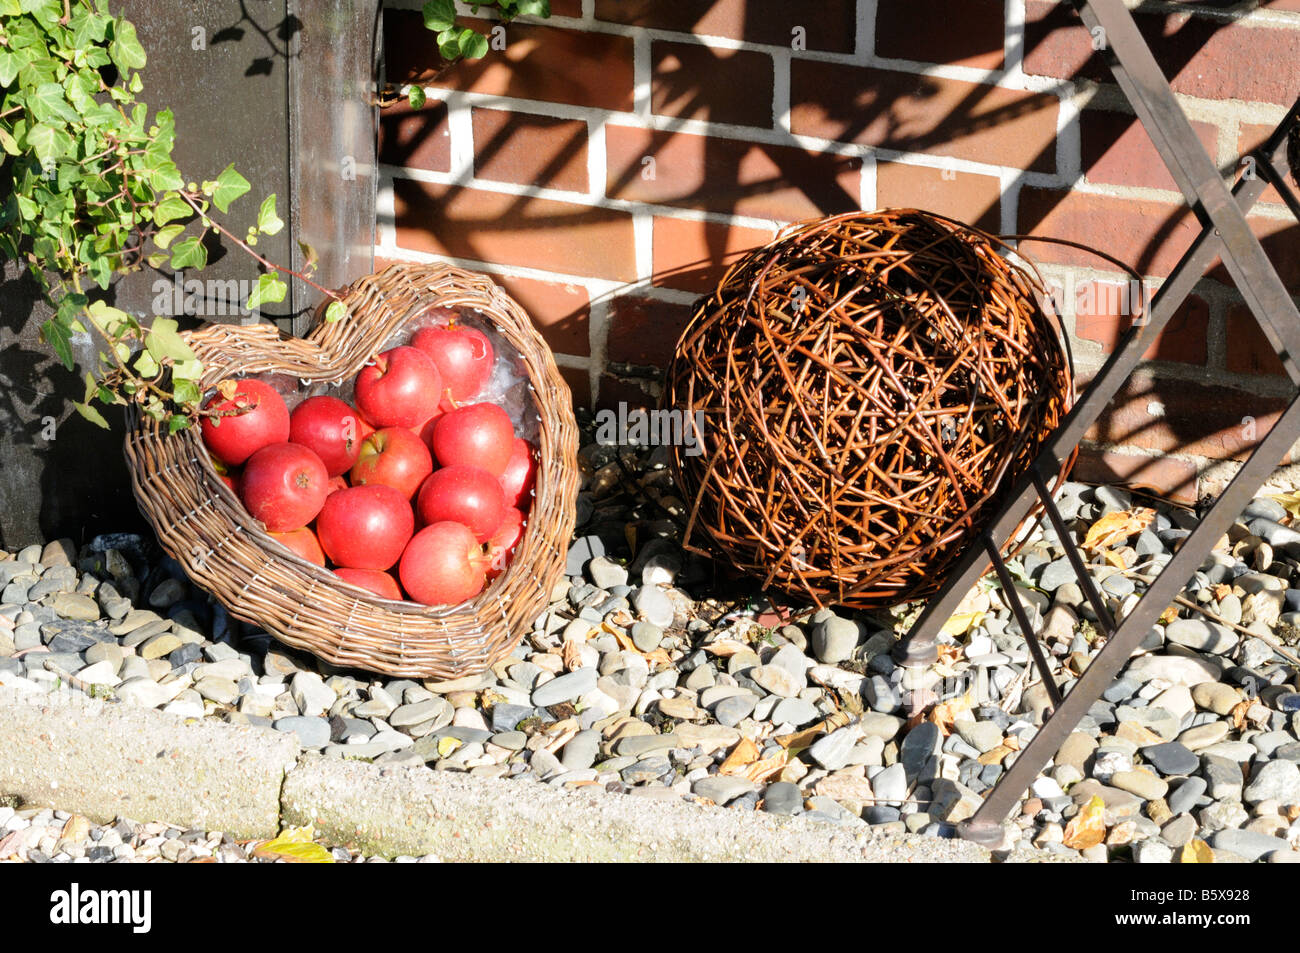 Gartendekoration mit Äpfeln und Korbwaren Garden decoration with apples and wickerwork Stock Photo